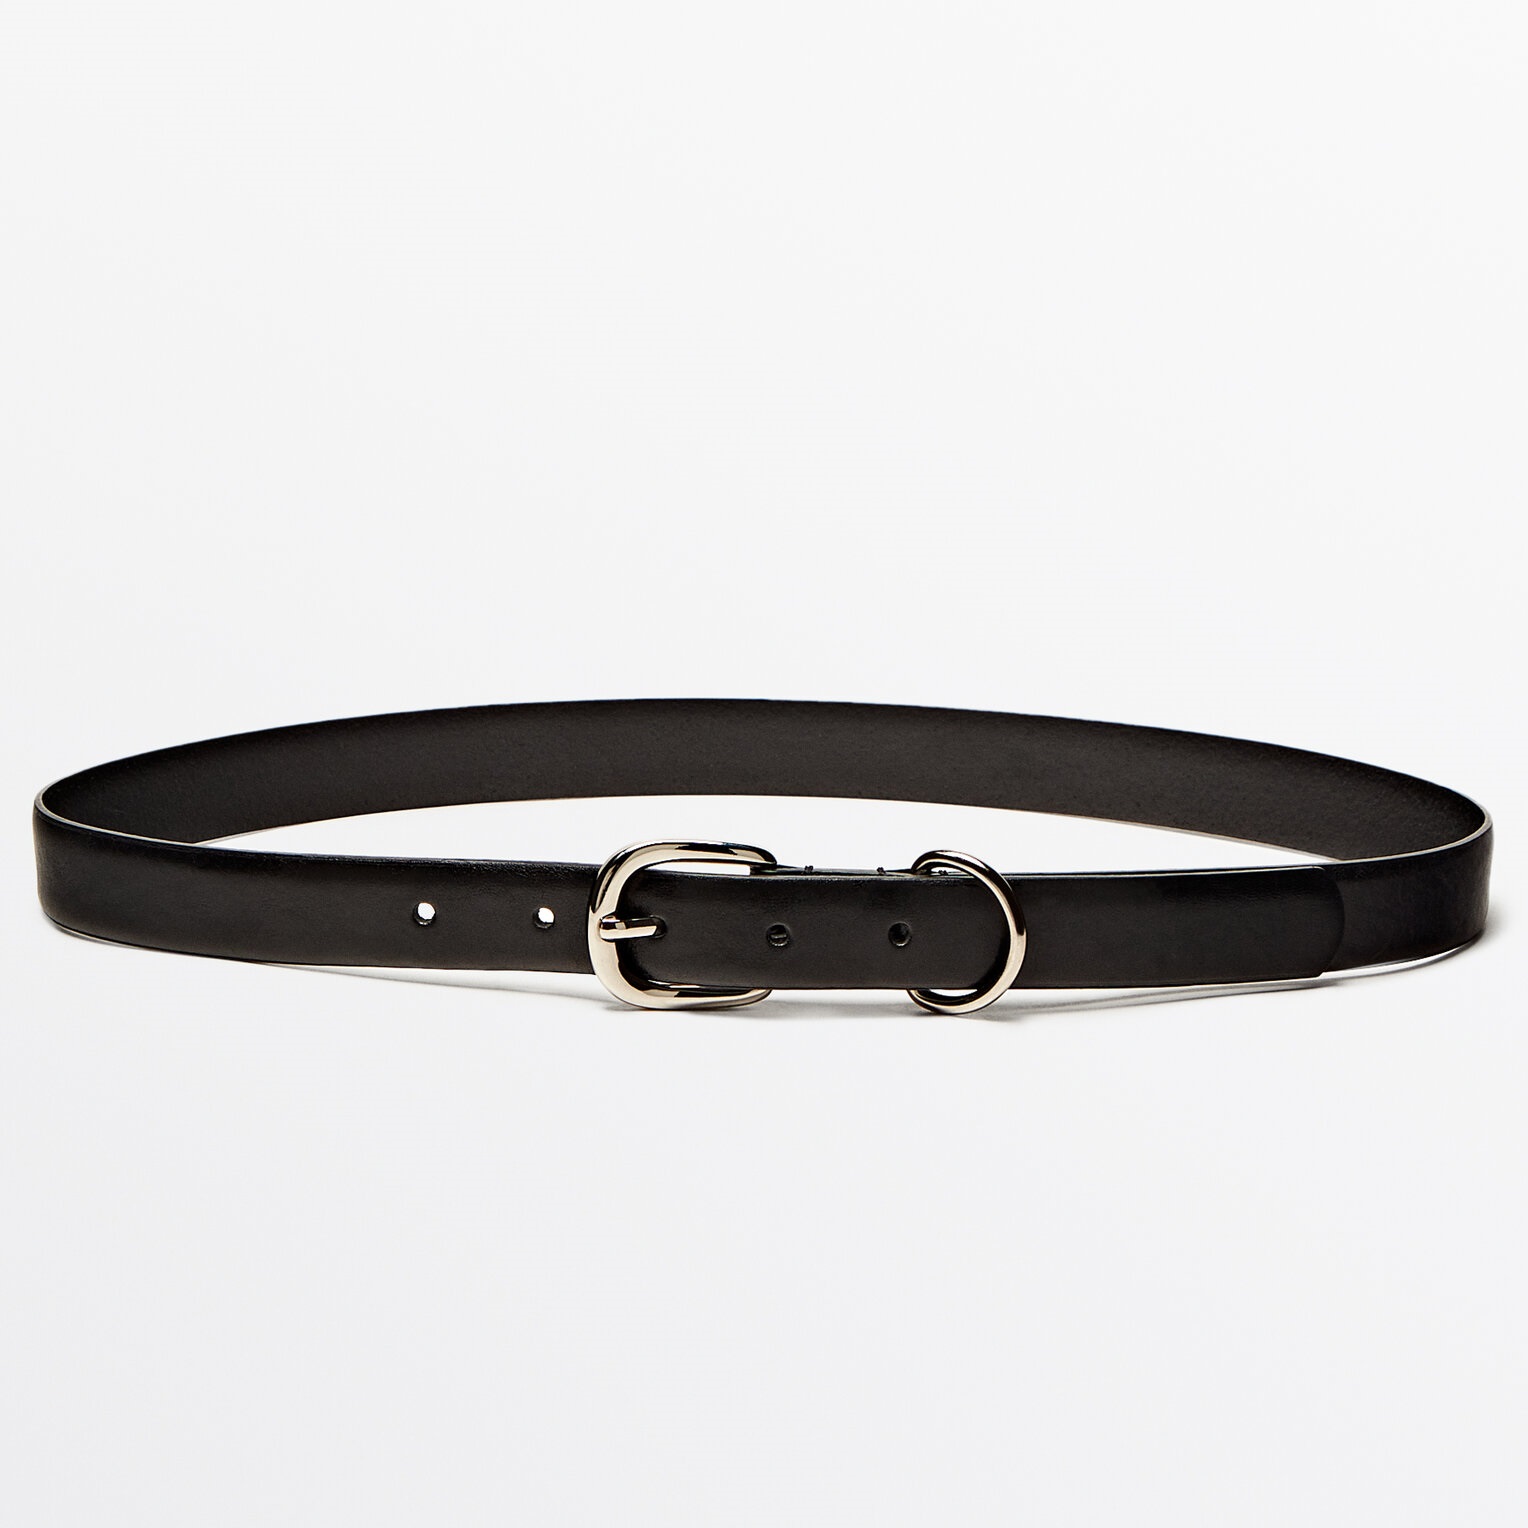 Ремень Massimo Dutti Leather With Metal Loop, черный ремень ружейный черный кожаный с петлей